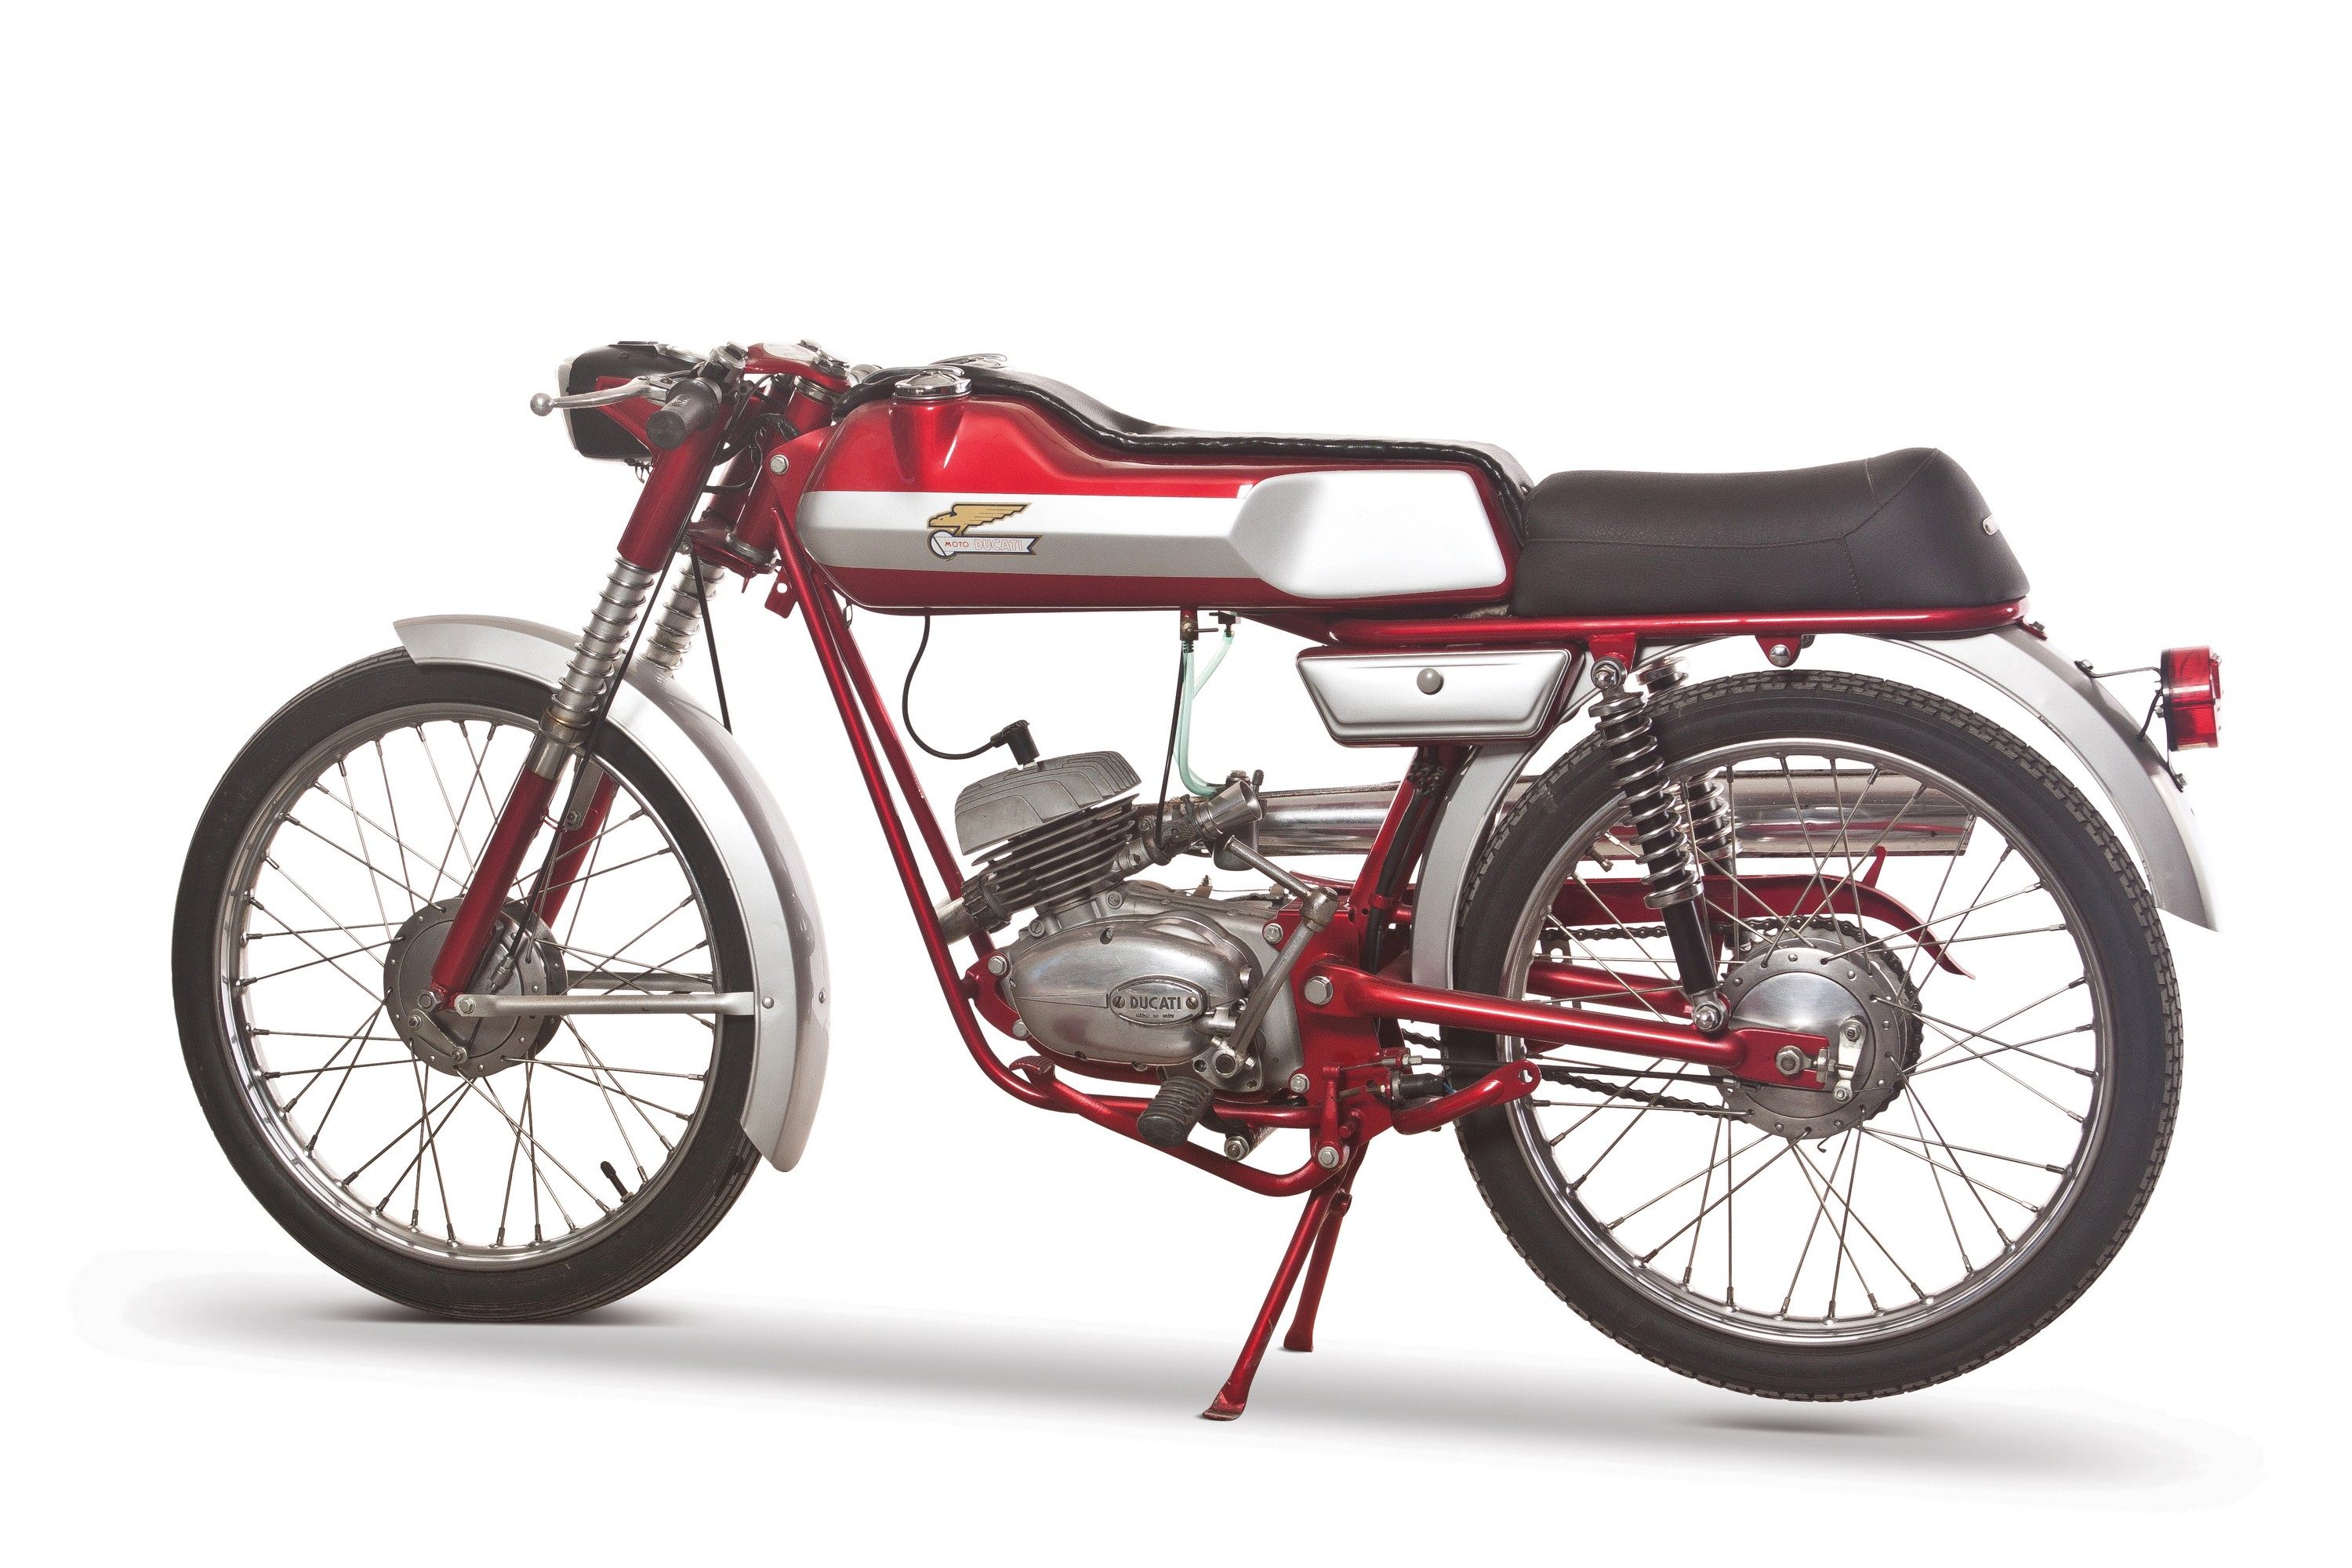 1966 Ducati 50 Sport SL1